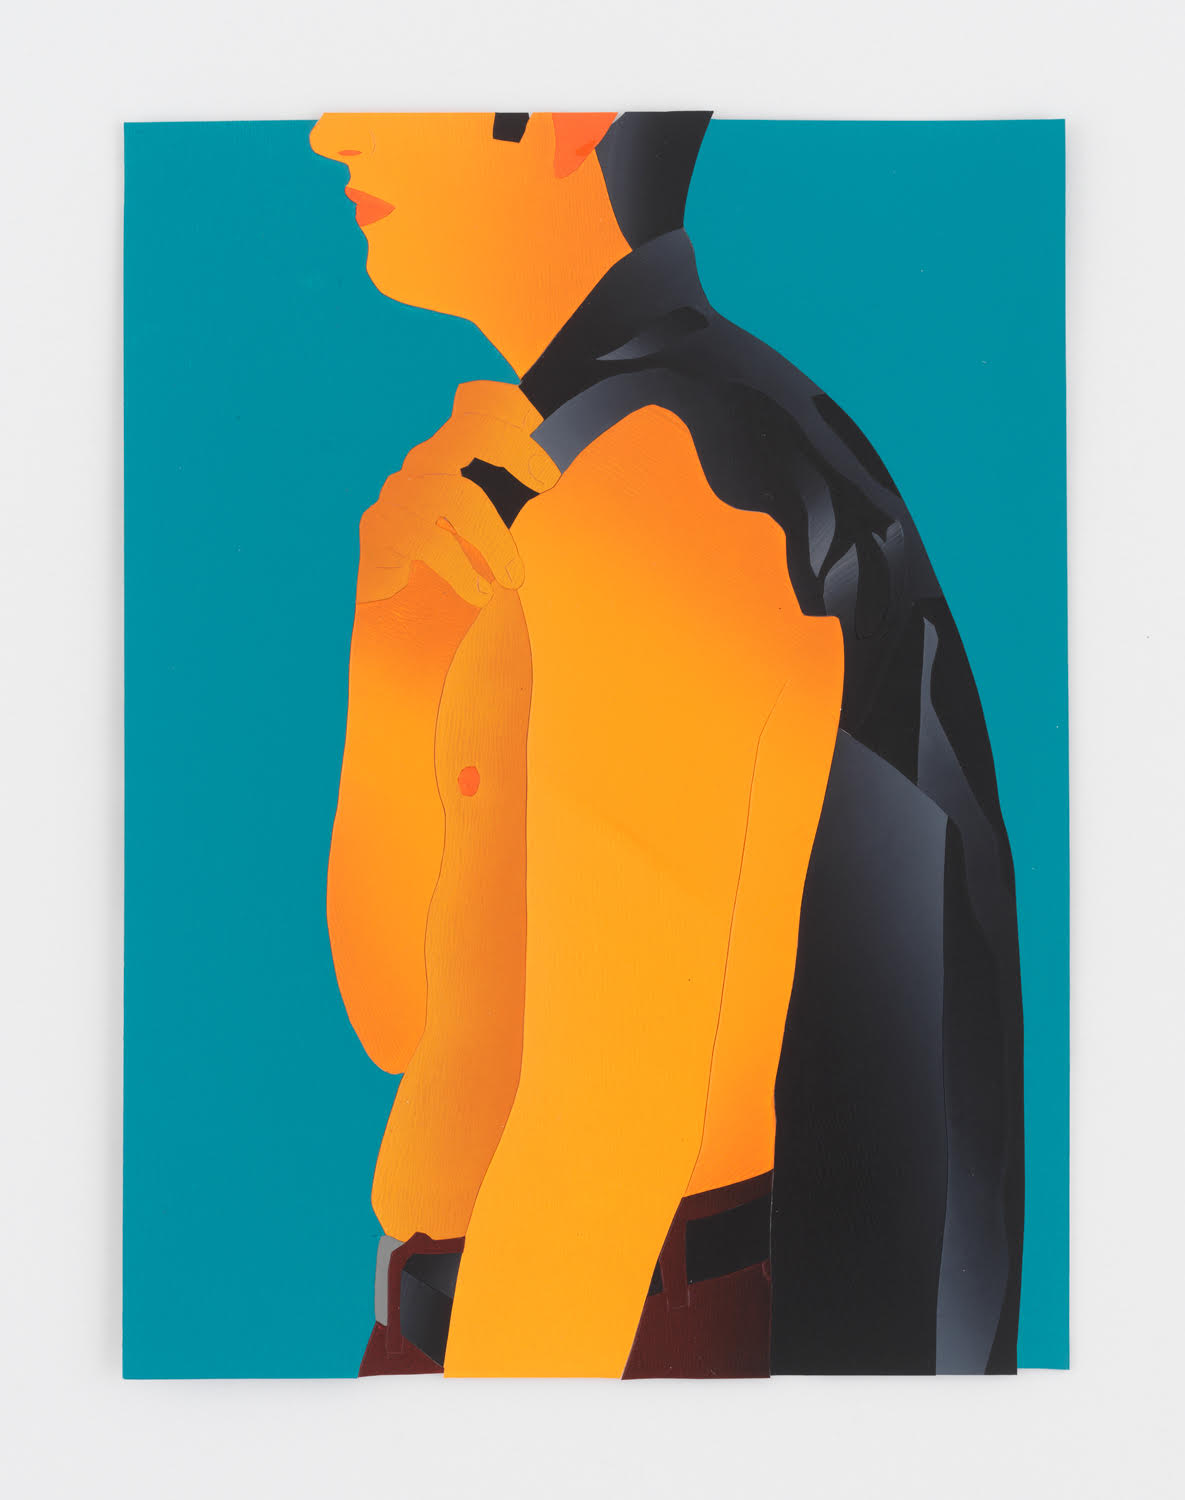 Anthony Iacono, Jacket, 2019, courtesy Marinaro Gallery